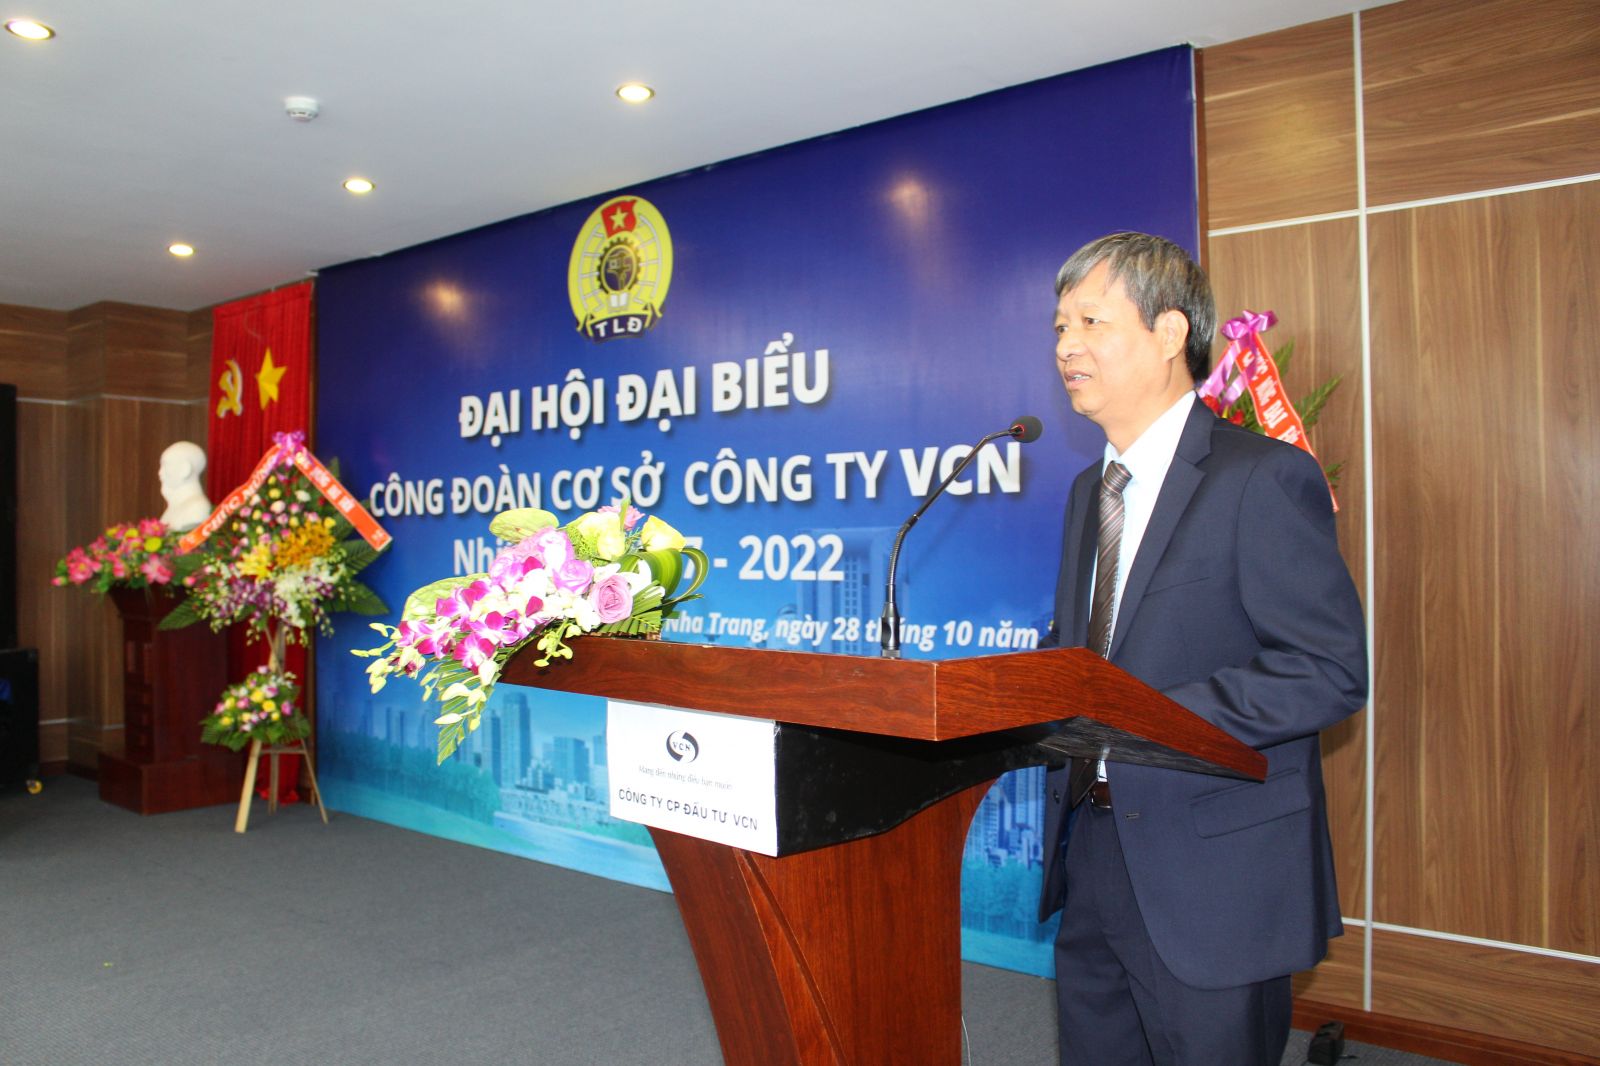 Ông Đinh Khắc Lâm, Phó Tổng giám đốc VCN.